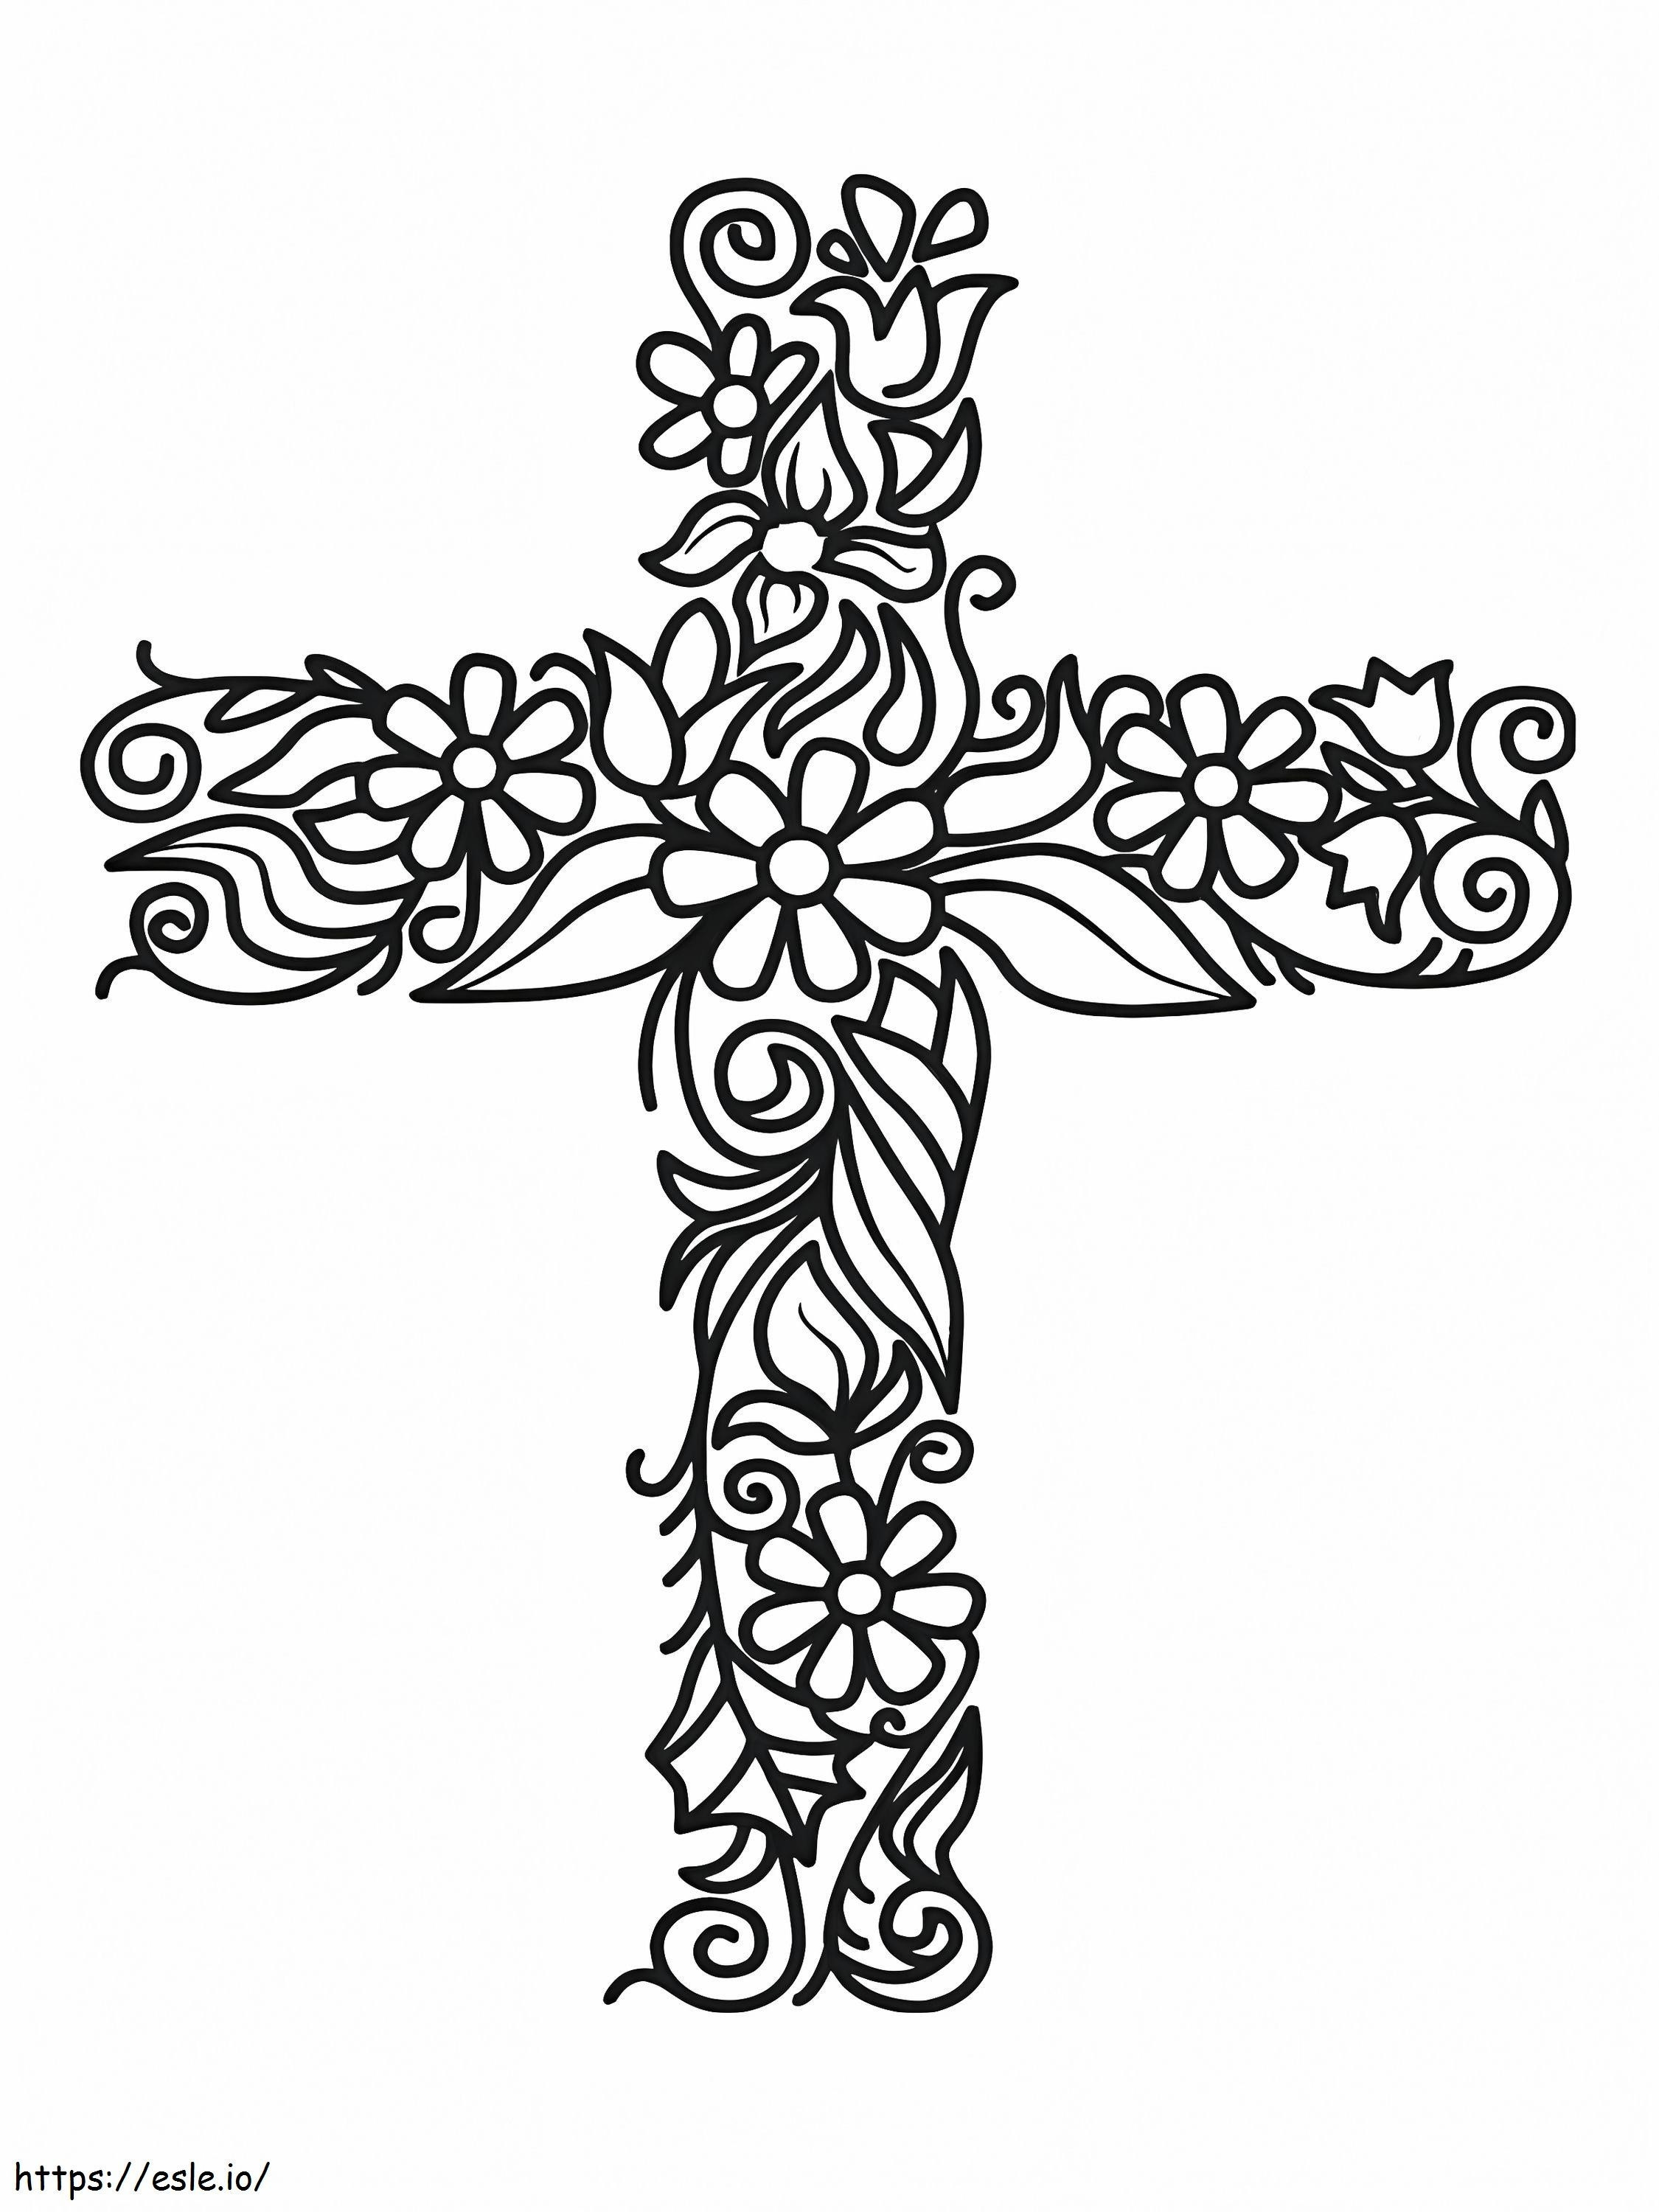 Croce fiorita di Pasqua da colorare